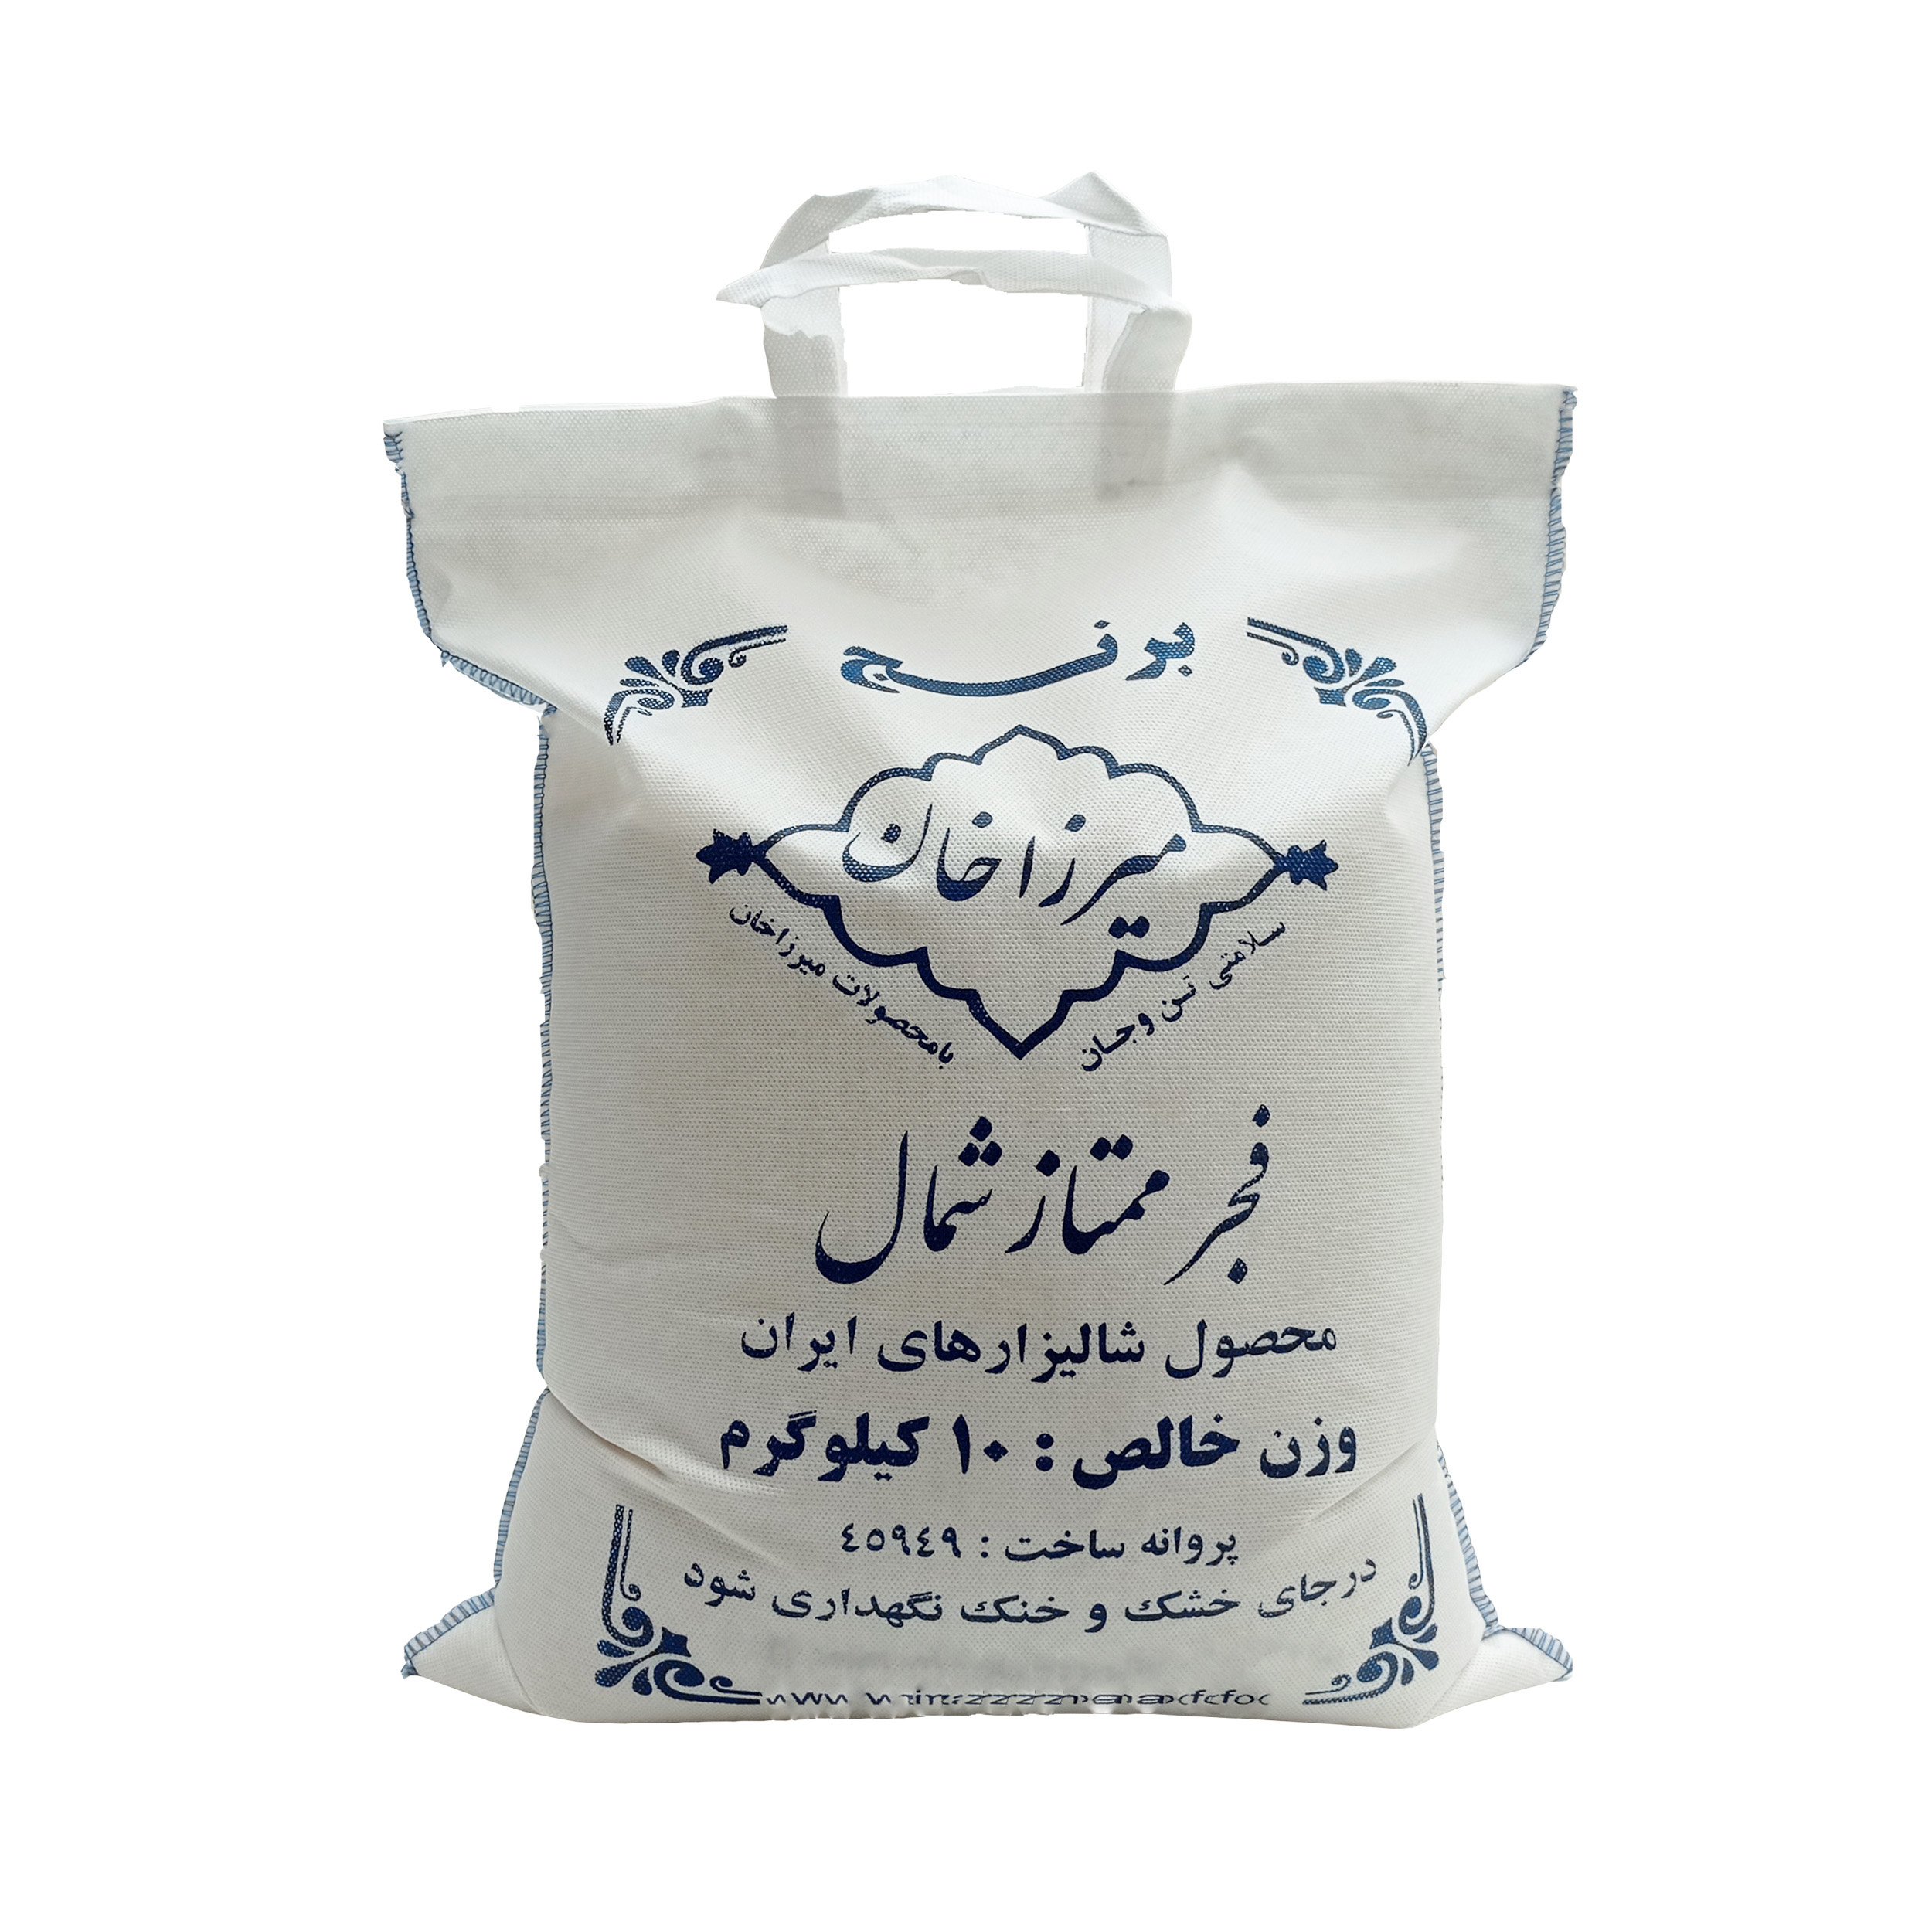 نکته خرید - قیمت روز برنج میرزاخان فجر ممتاز - 10 کیلوگرم خرید